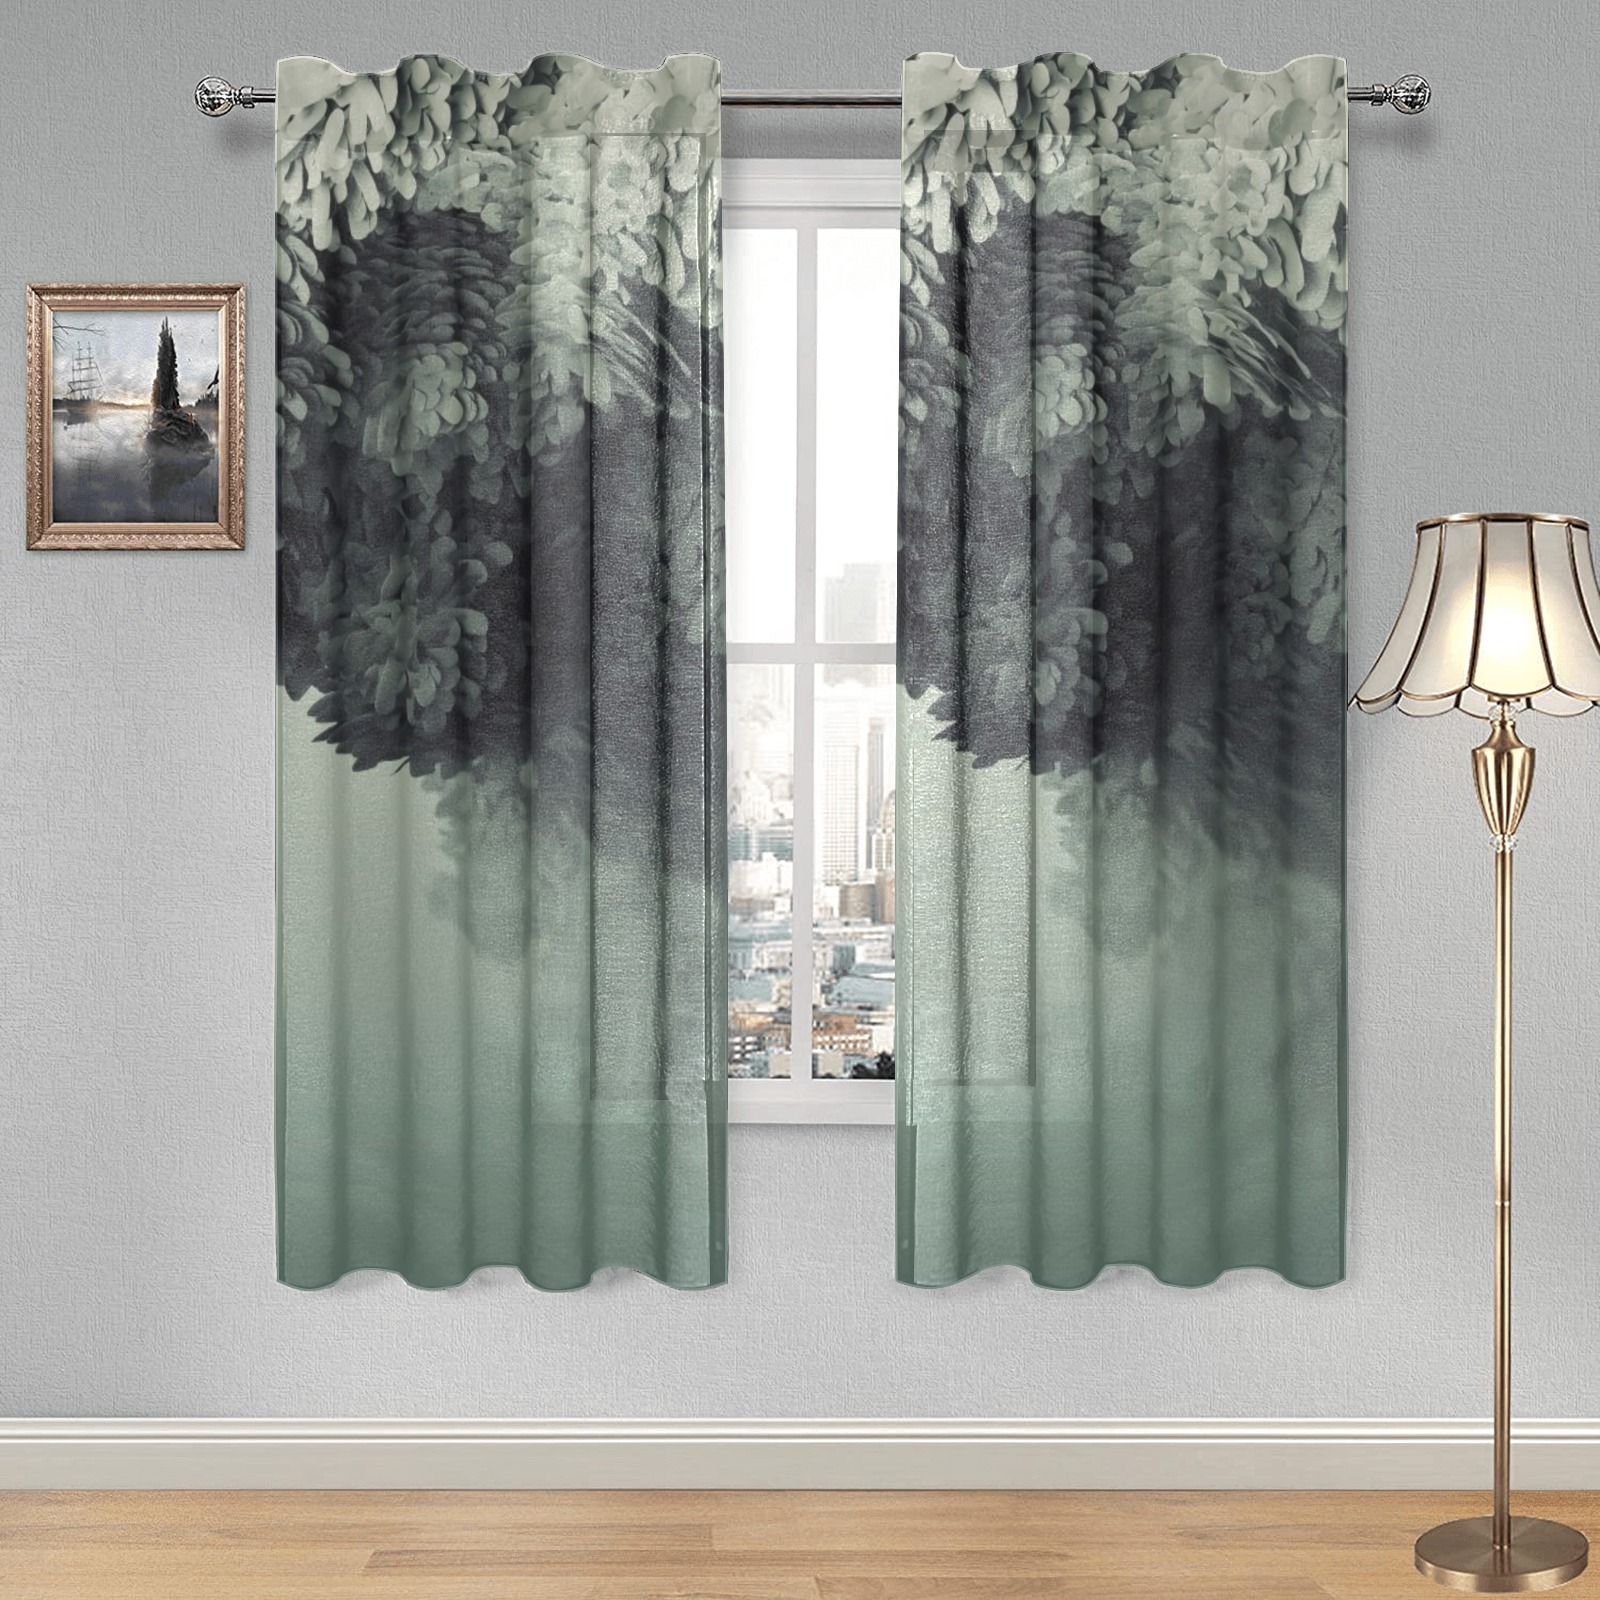 Treeonwater Gauze Curtain 28"x63" (Two-Piece)